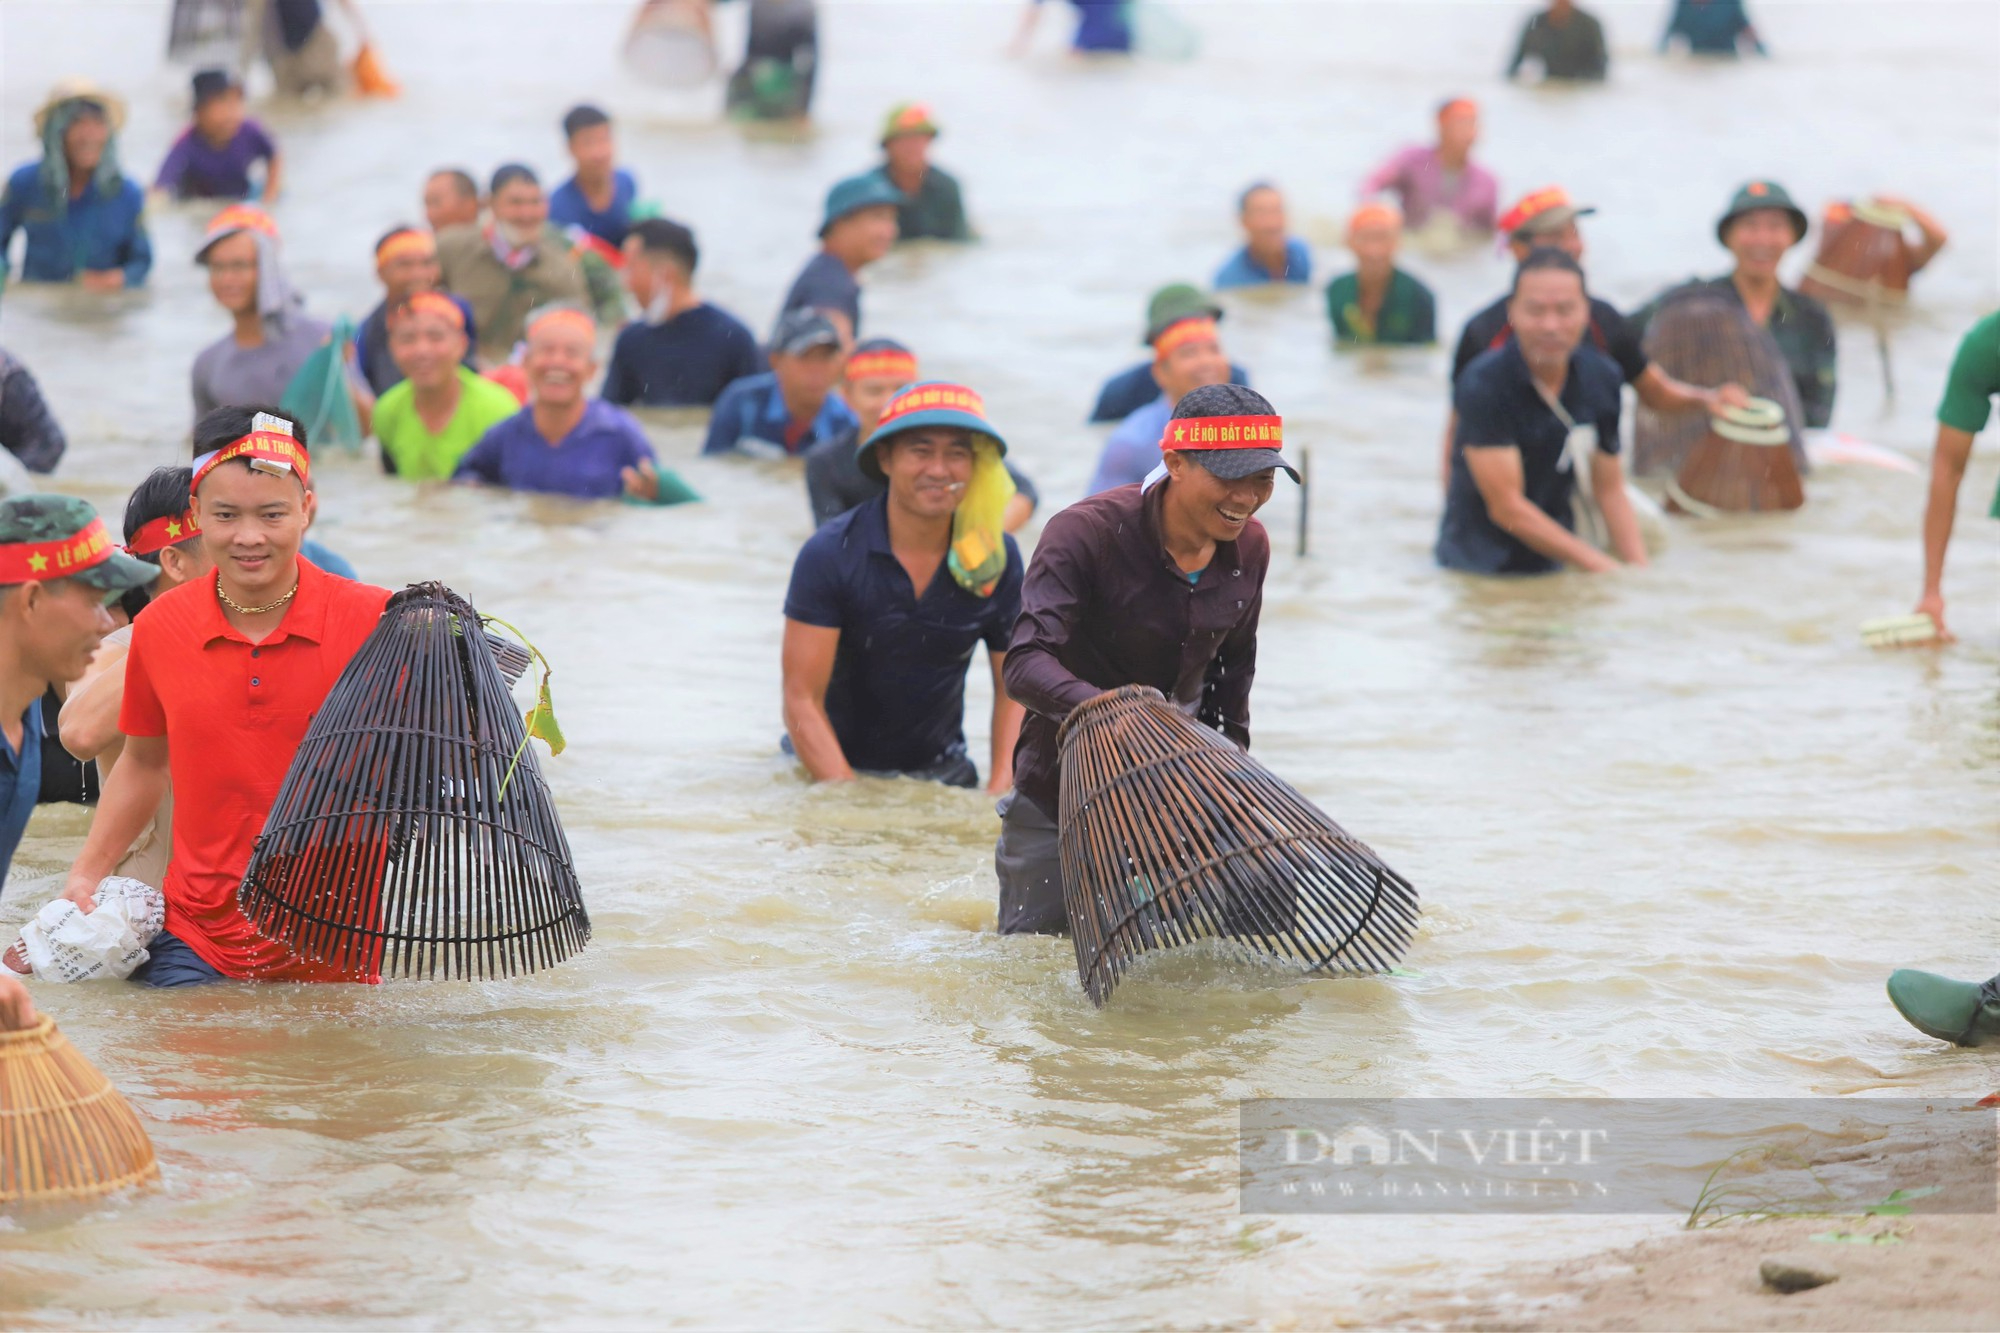 Hà Tĩnh: Hàng nghìn người dân reo hò, lội bùn tham gia Lễ hội bắt cá truyền thống xã Thạch Hưng - Ảnh 8.